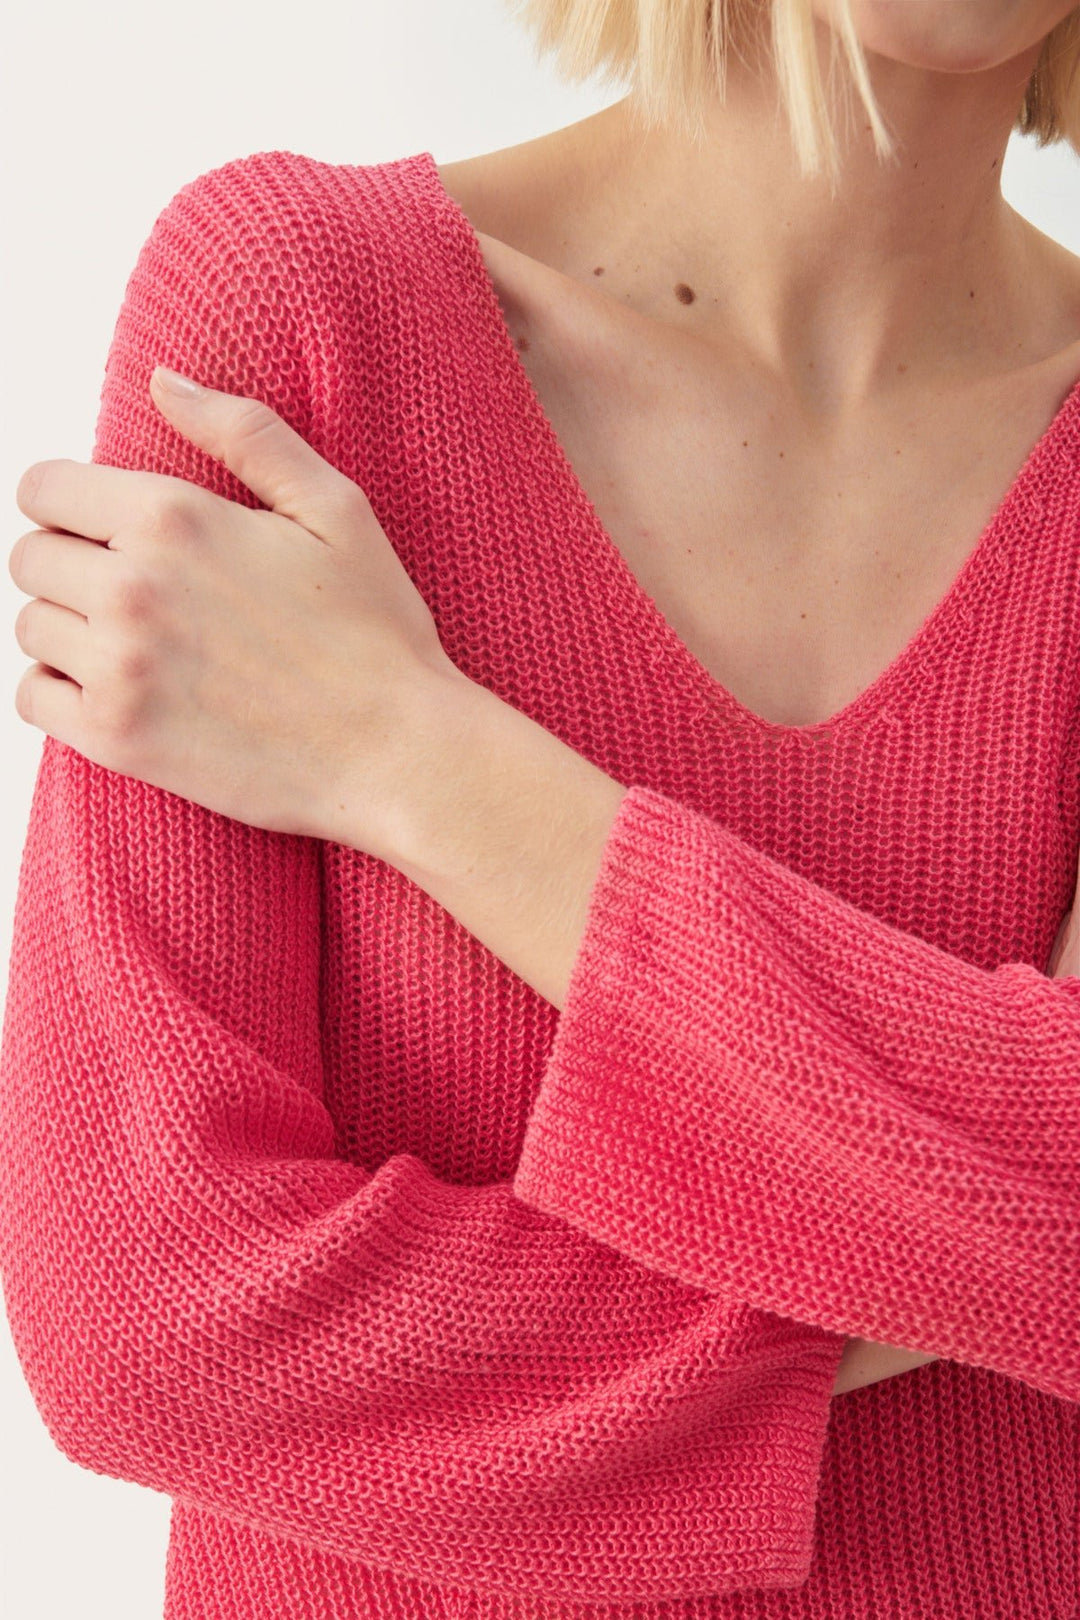 Etronapw Pullover Claret Red | Genser | Smuk - Dameklær på nett